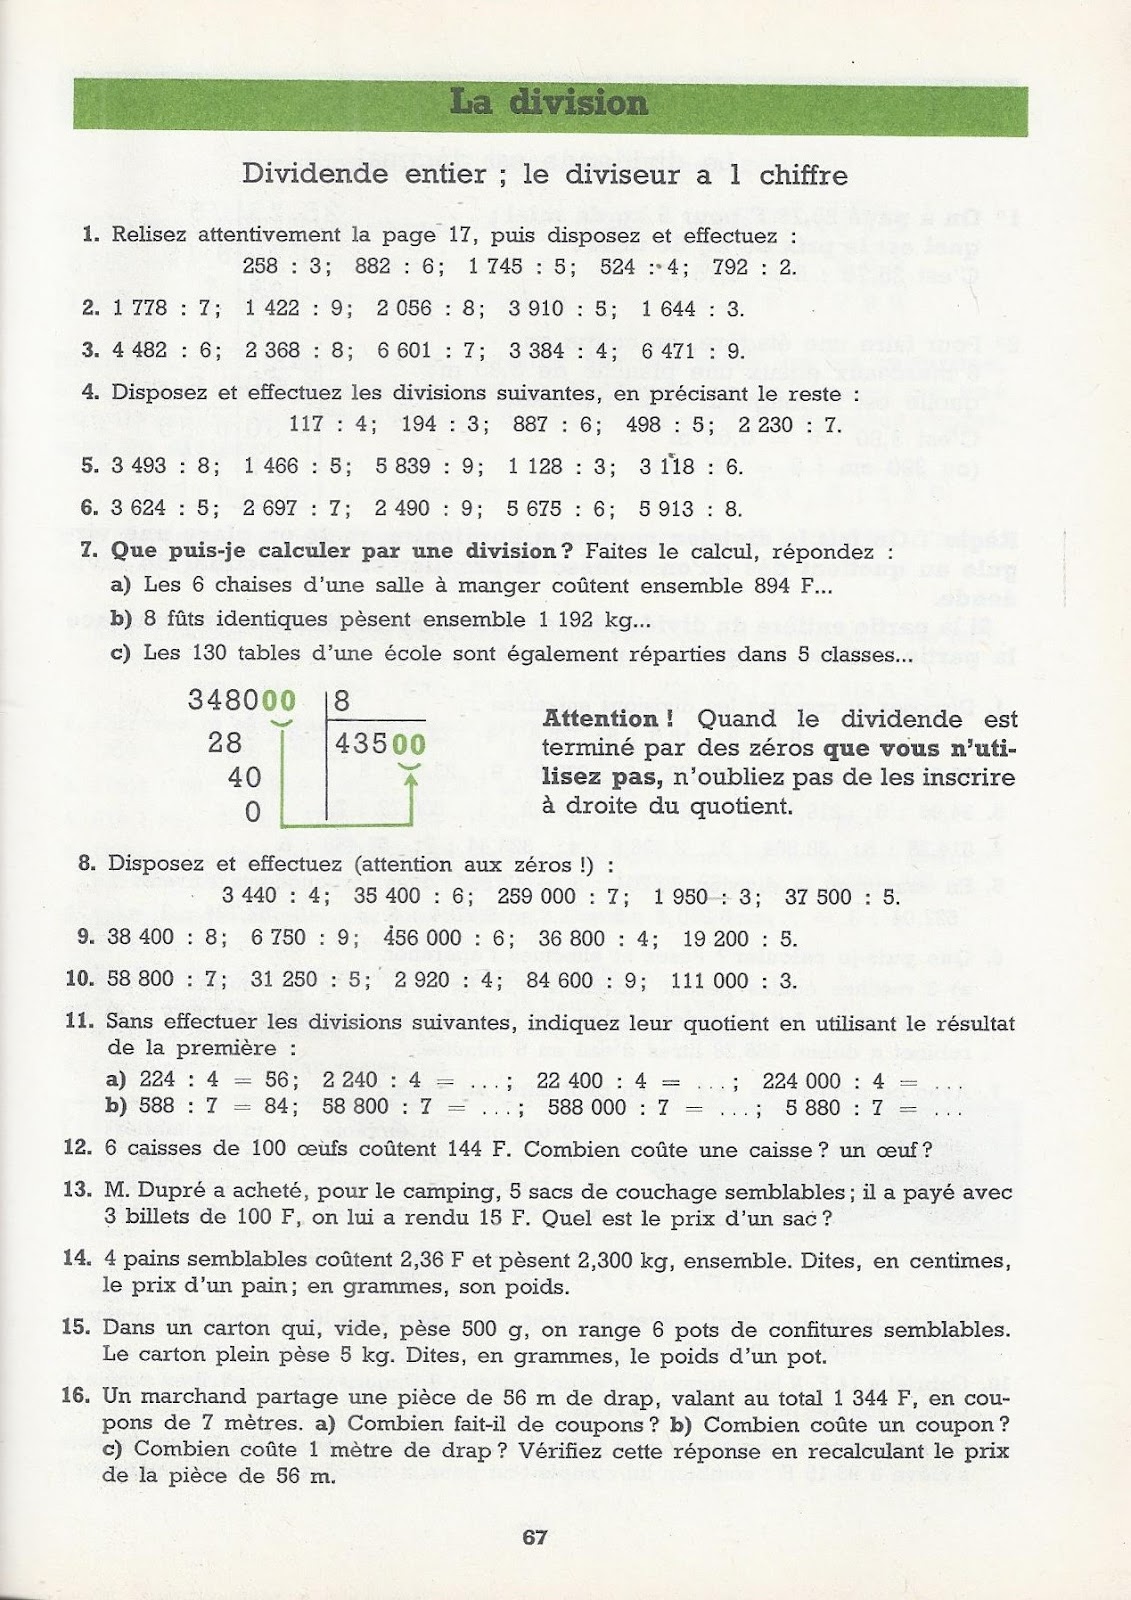 Manuels anciens: Brandicourt, Penneçot, Problèmes et calculs CM1 (1963)